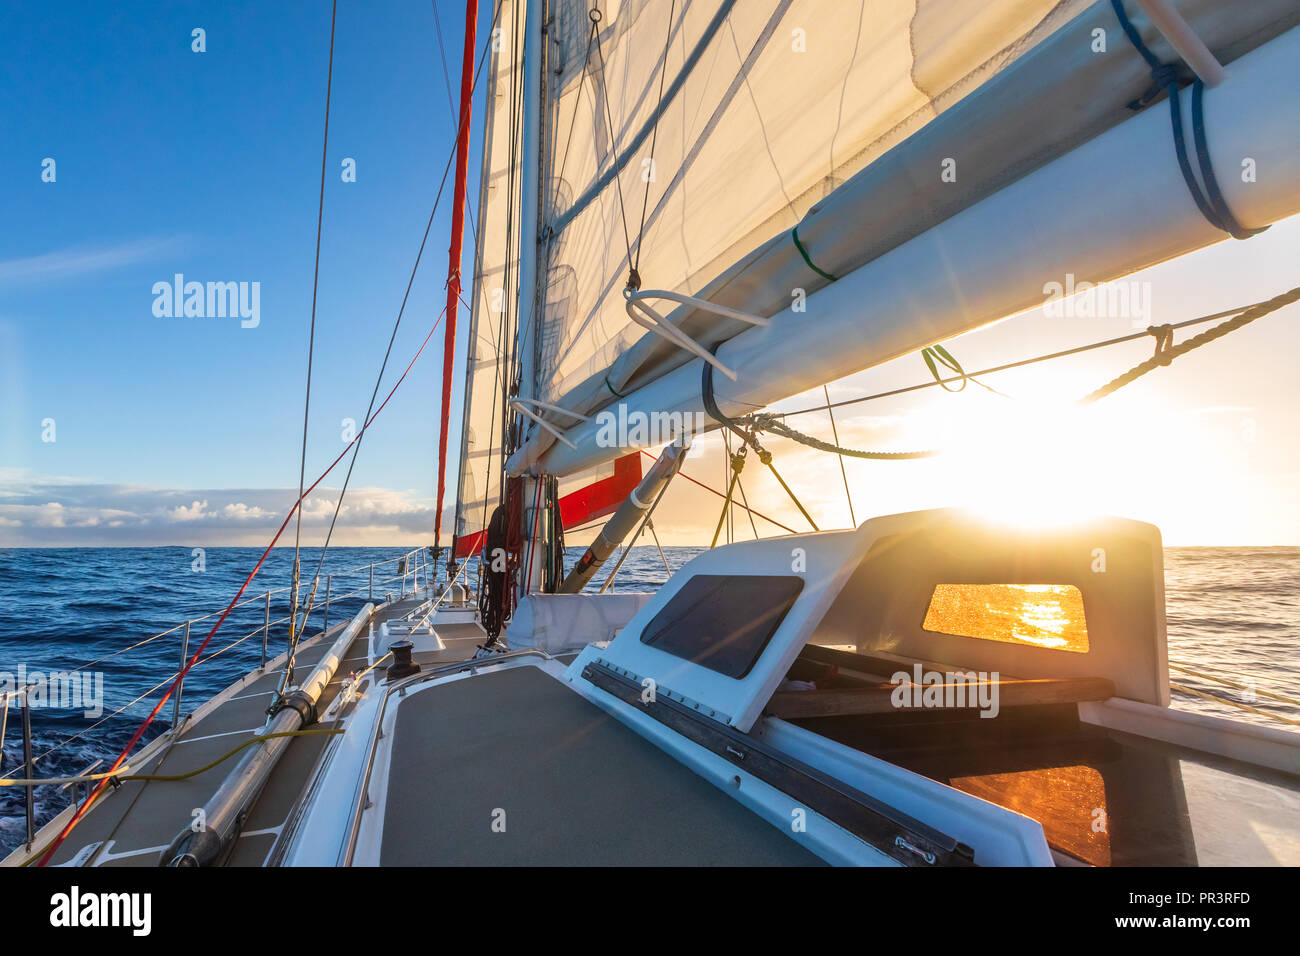 Segeln auf dem Segelboot Yacht mit schönen Sonnenuntergang Licht klaren blauen Himmel und Meer in der Drake Passage, Sommer Cruising, Nahaufnahme von Boot Deck Stockfoto